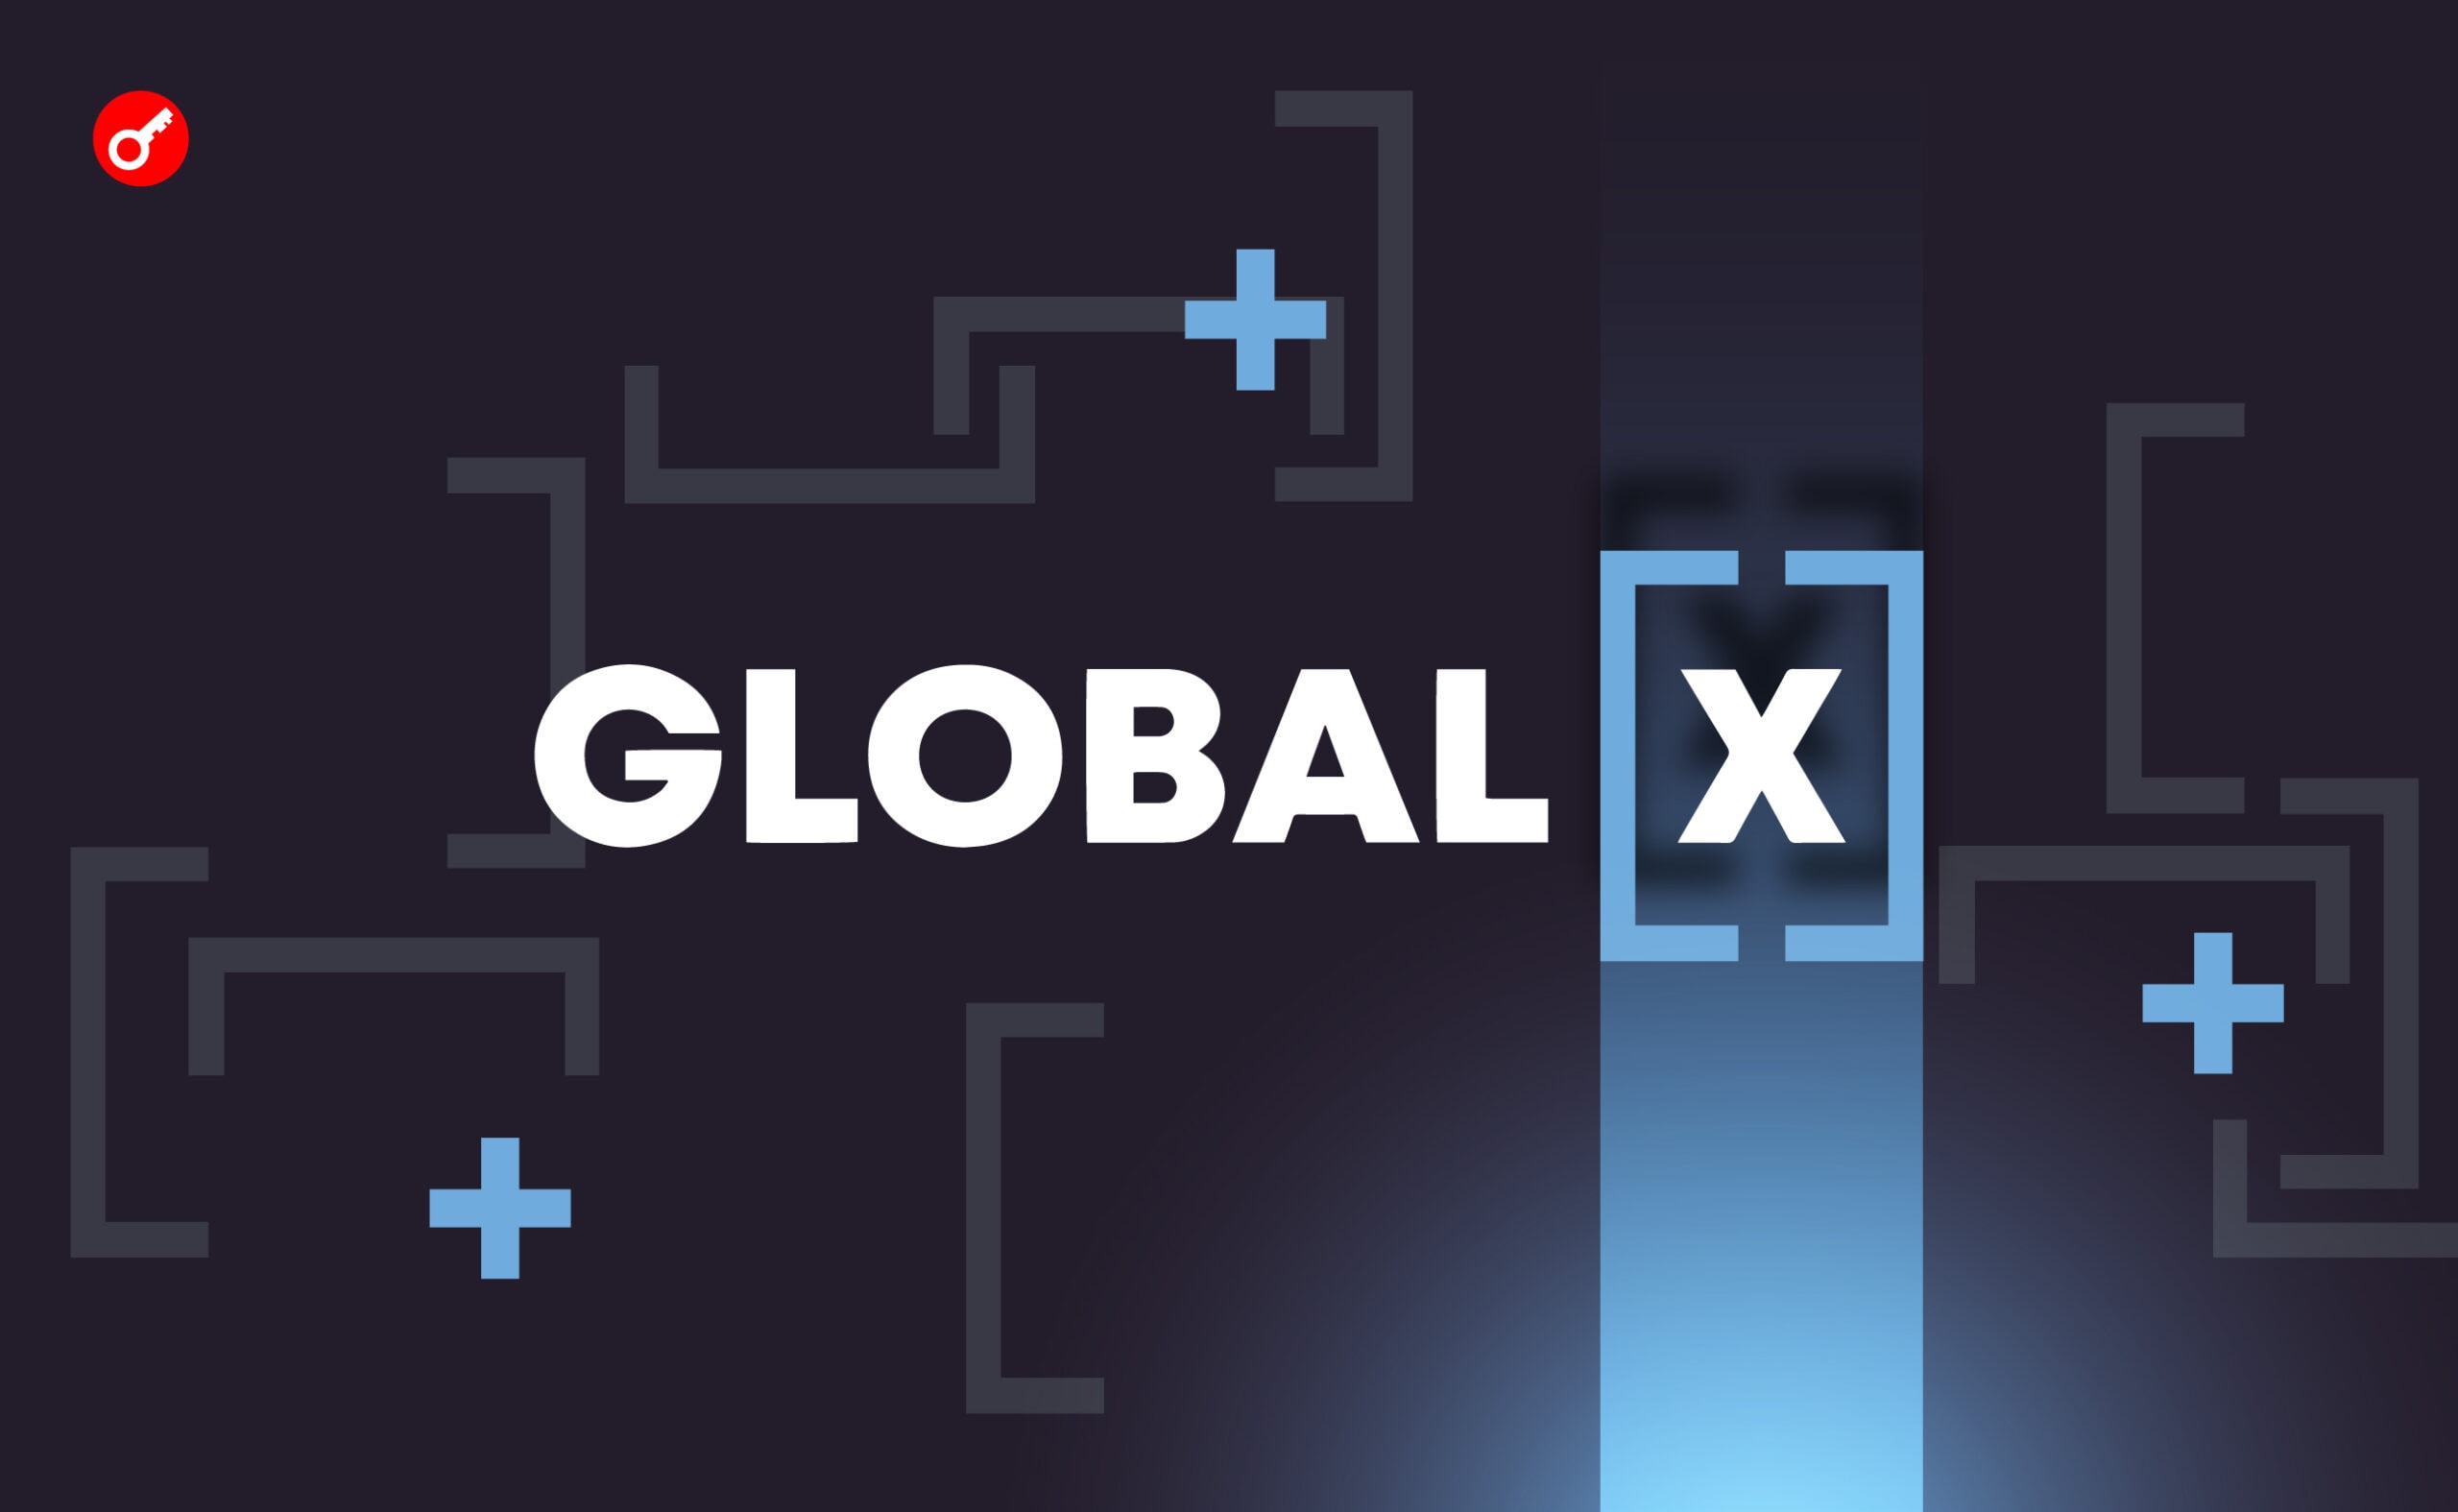 Global X відкликала заявку на спотовий біткоїн-ETF. Головний колаж новини.